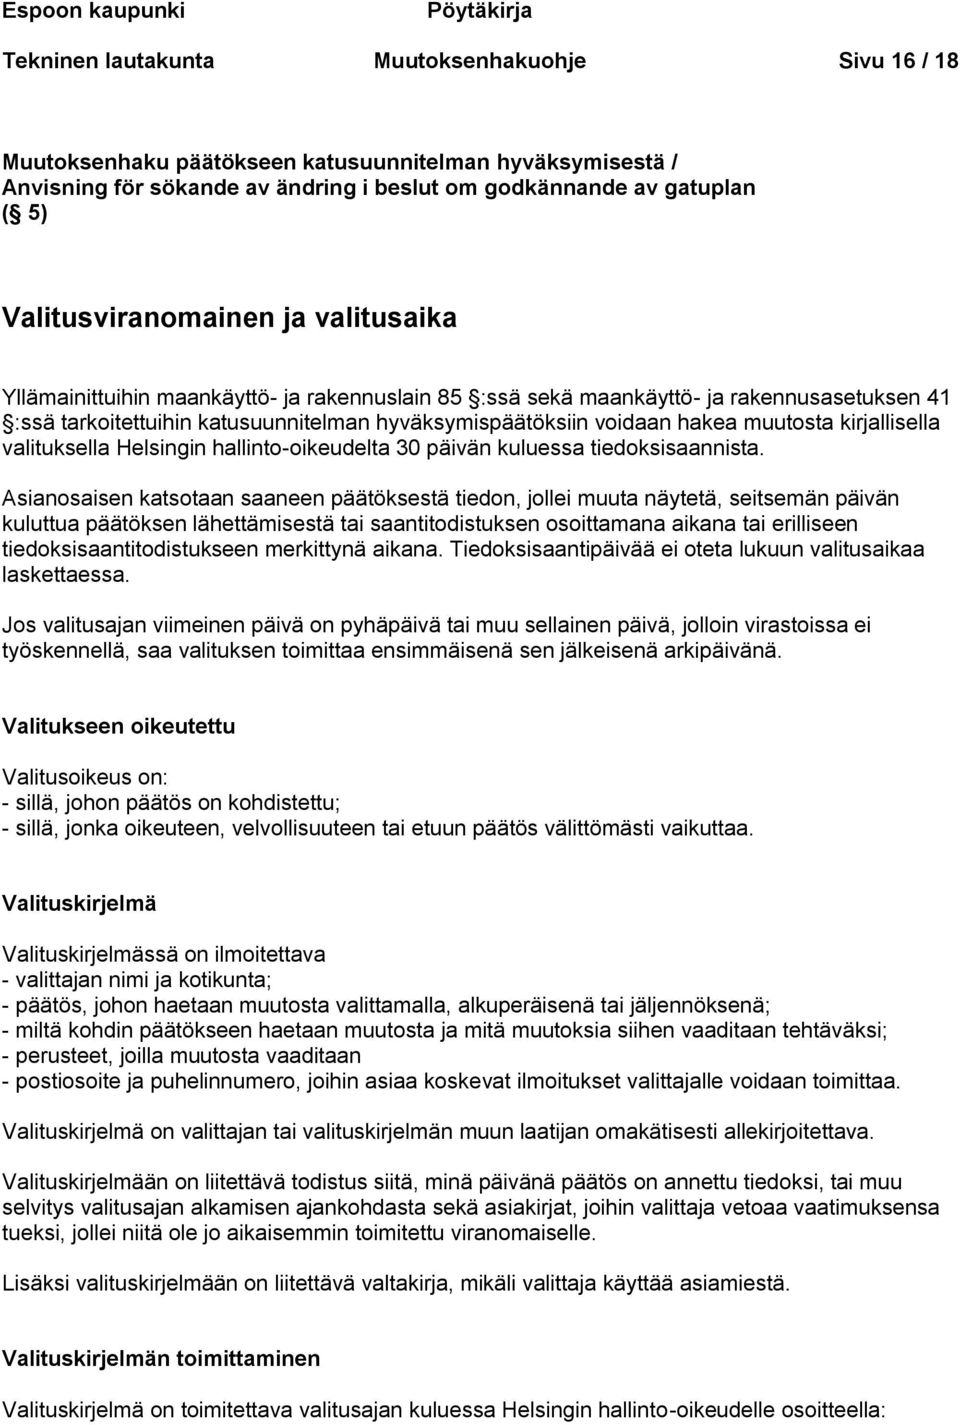 hyväksymispäätöksiin voidaan hakea muutosta kirjallisella valituksella Helsingin hallinto-oikeudelta 30 päivän kuluessa tiedoksisaannista.